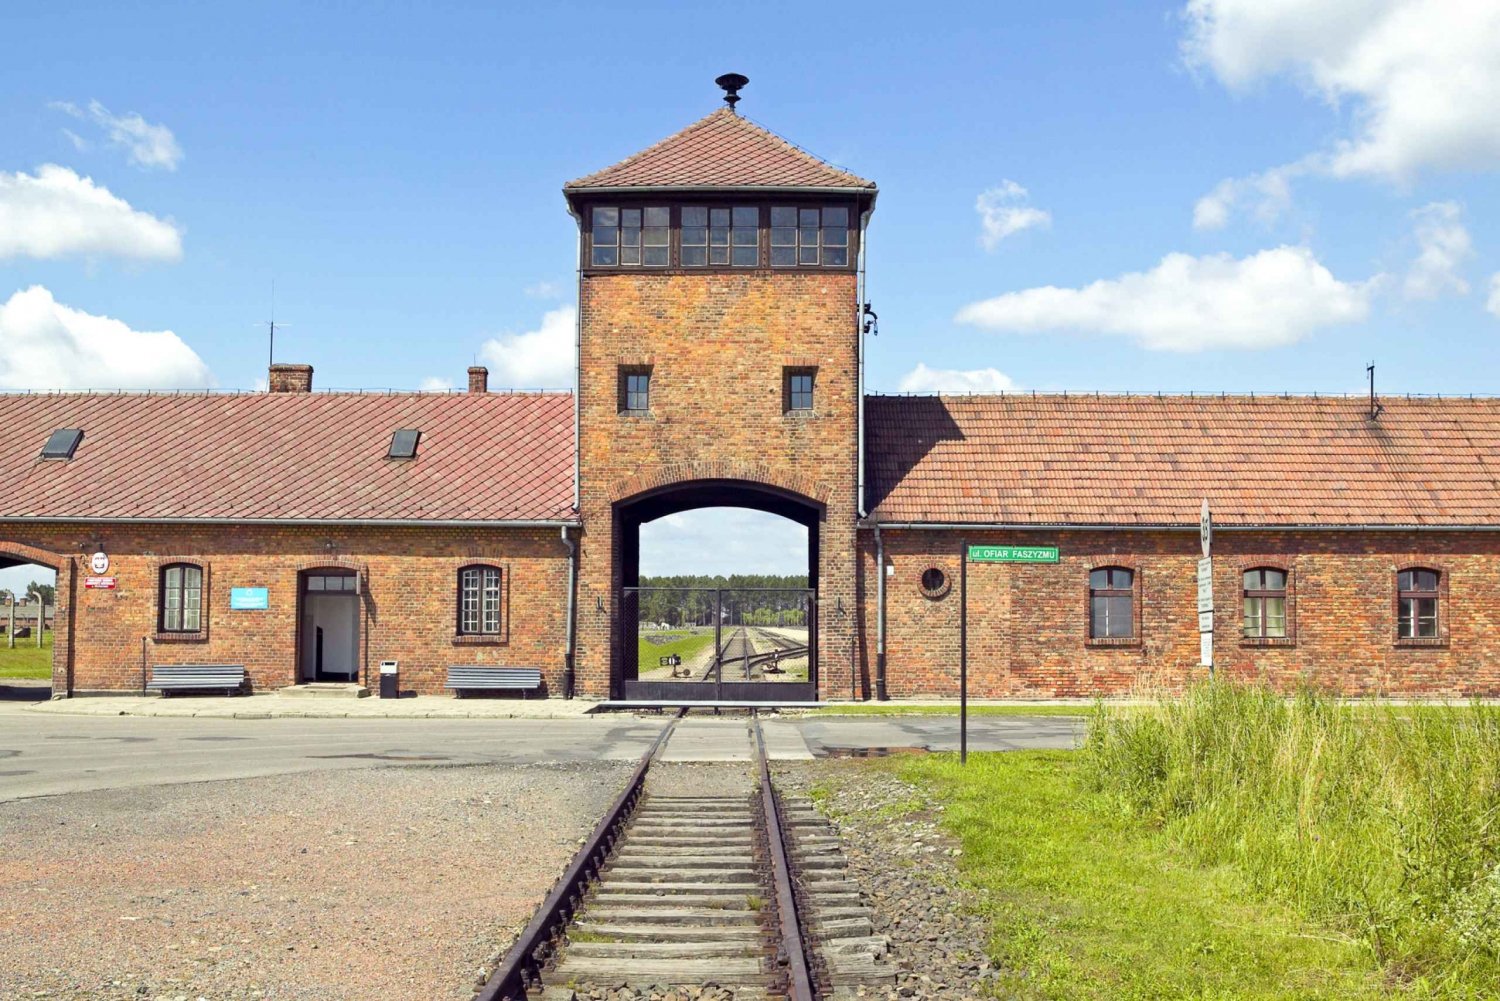 Krakow: Auschwitz-Birkenau and Salt Mine Guided Tour